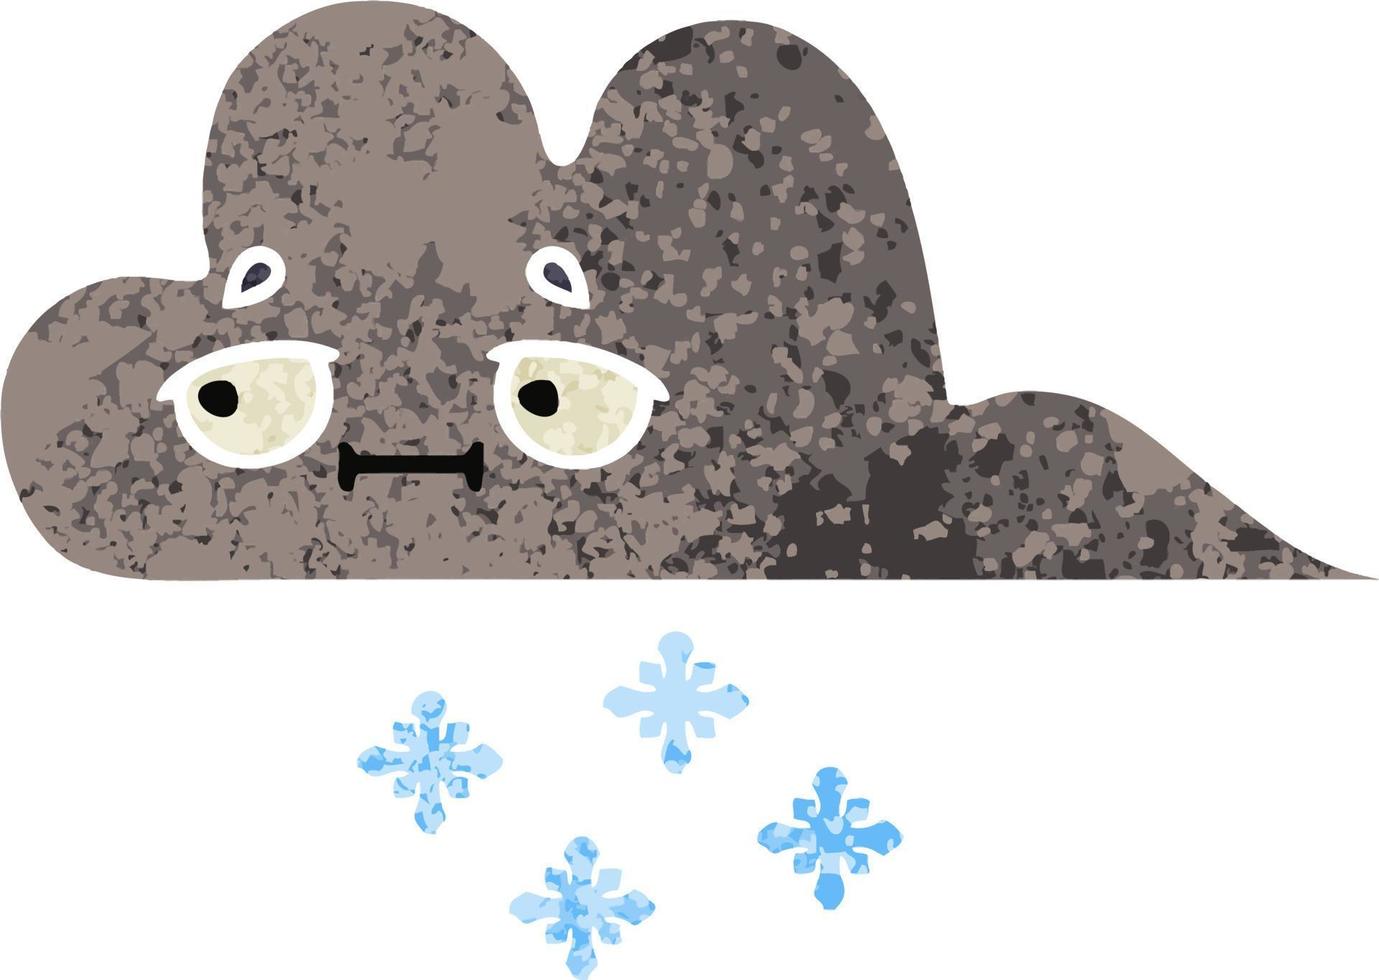 nube de nieve de tormenta de dibujos animados de estilo de ilustración retro vector